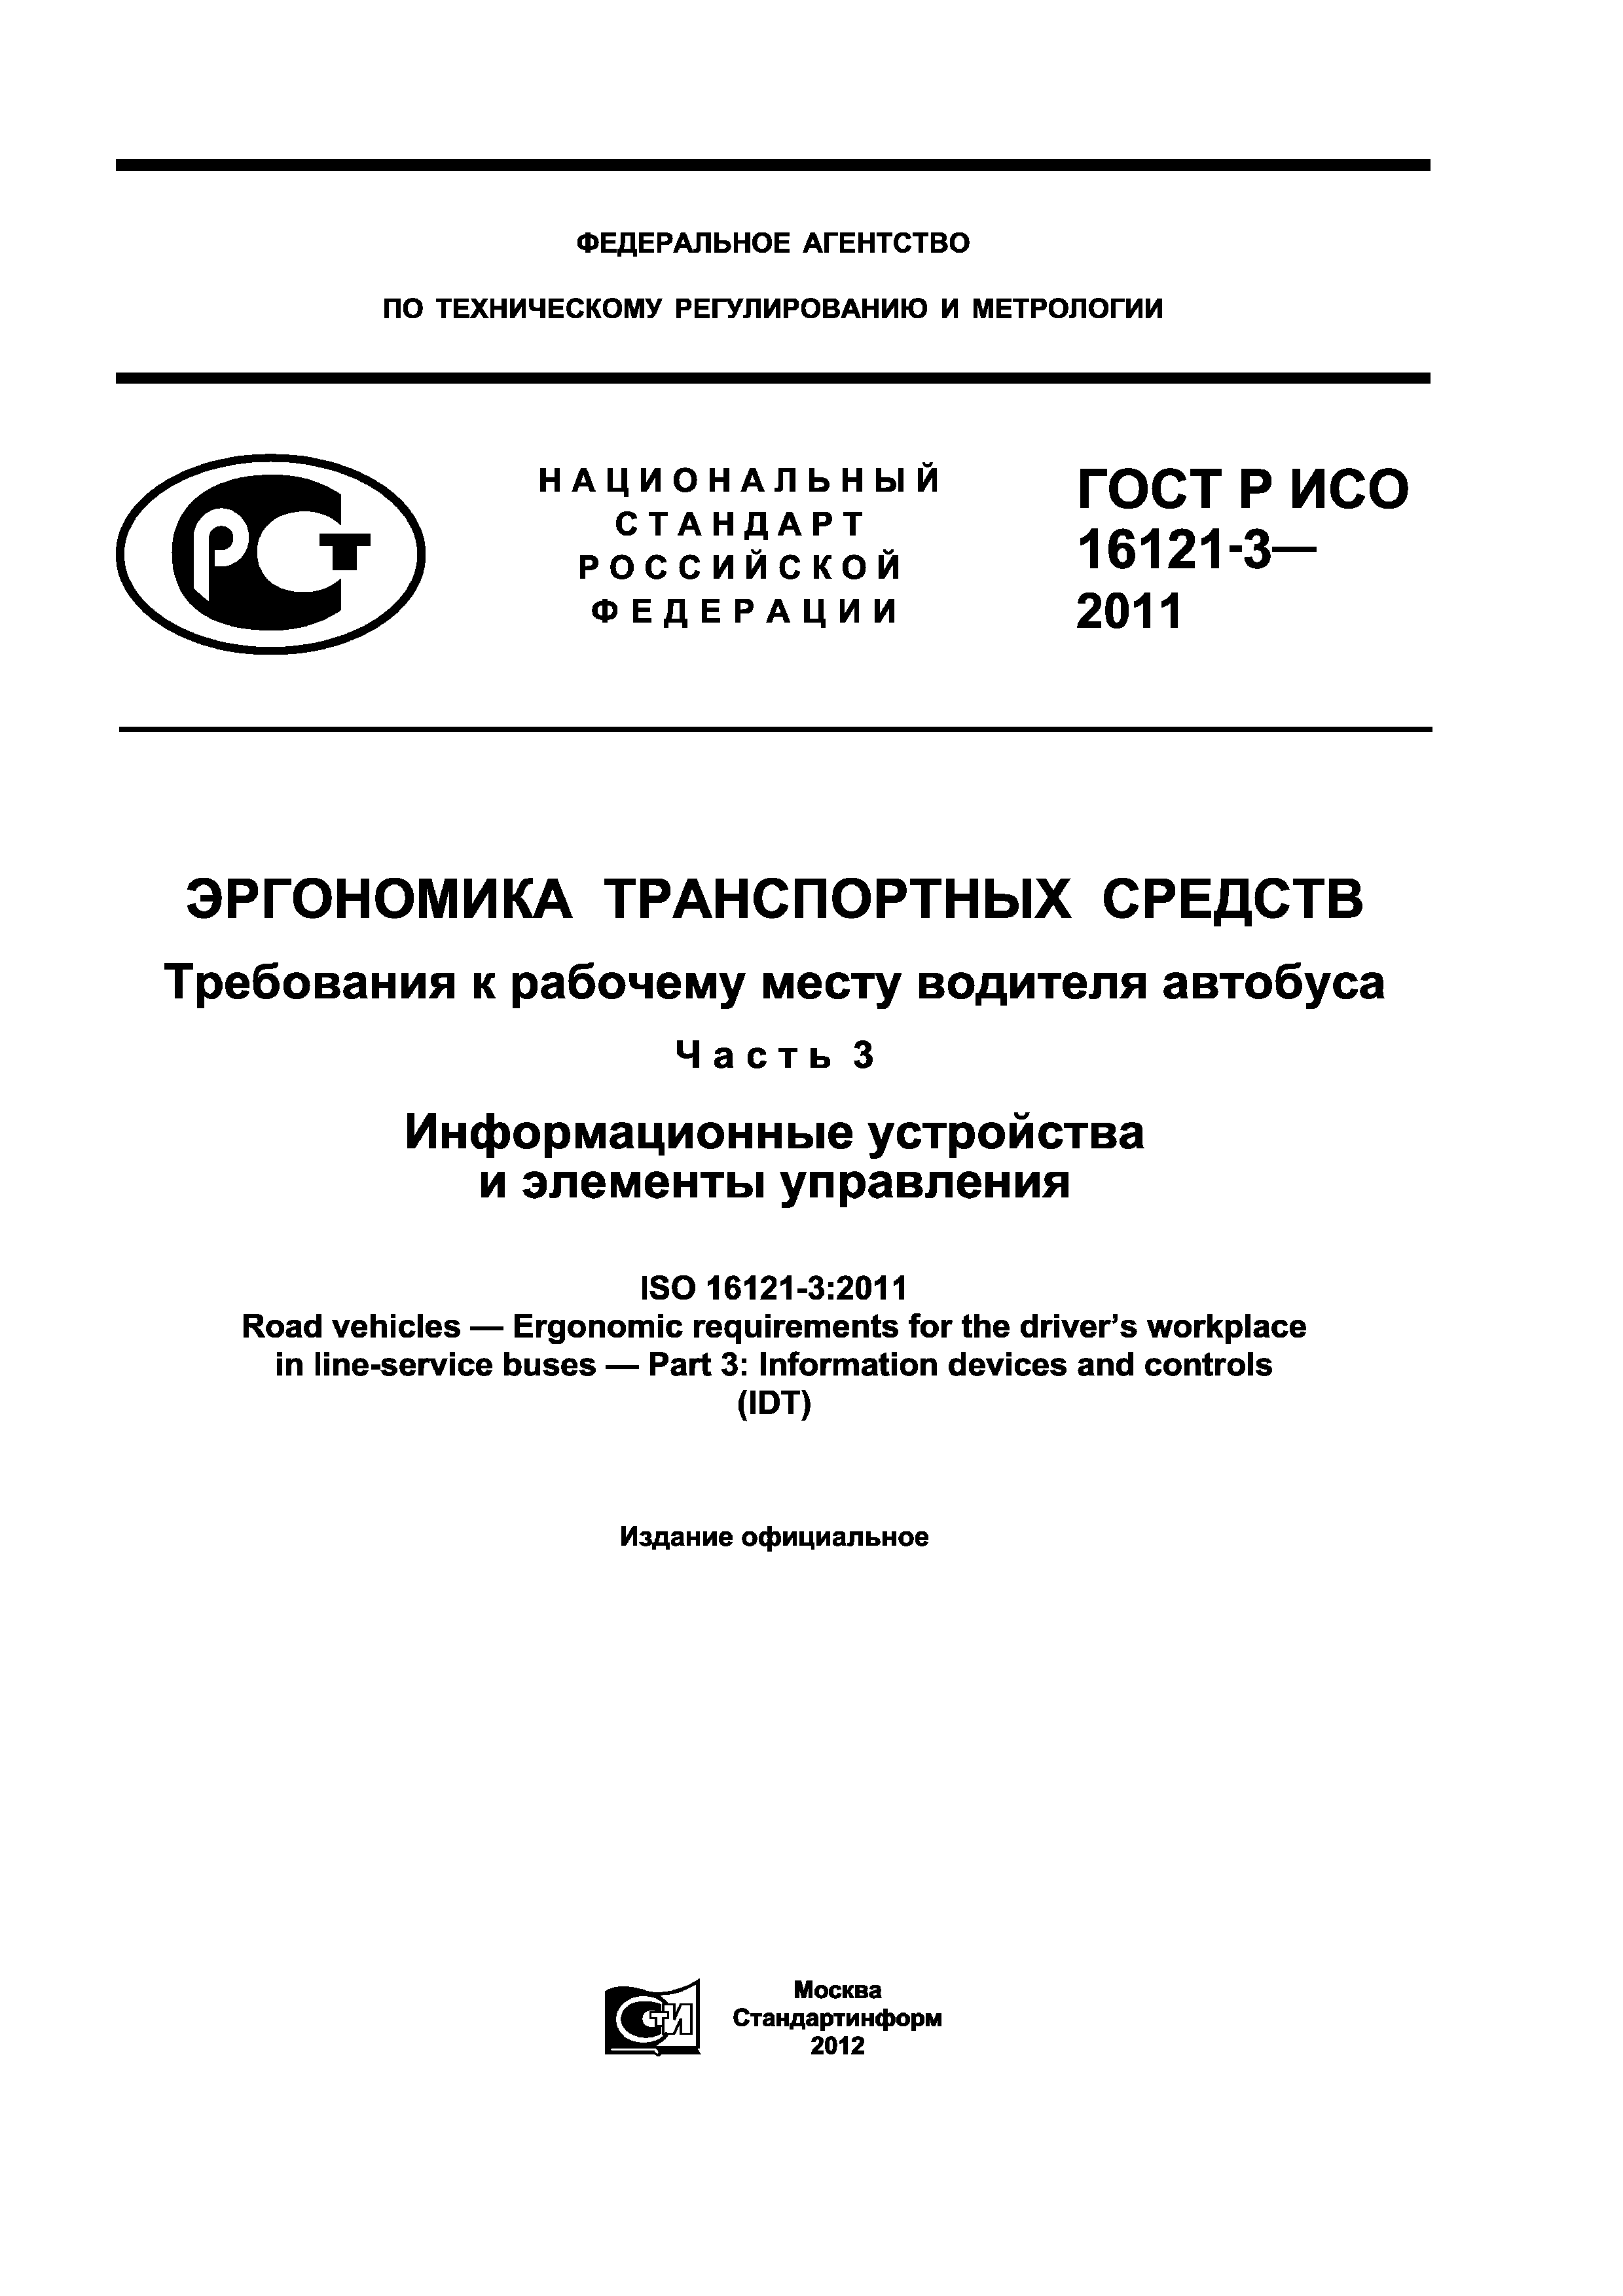 ГОСТ Р ИСО 16121-3-2011